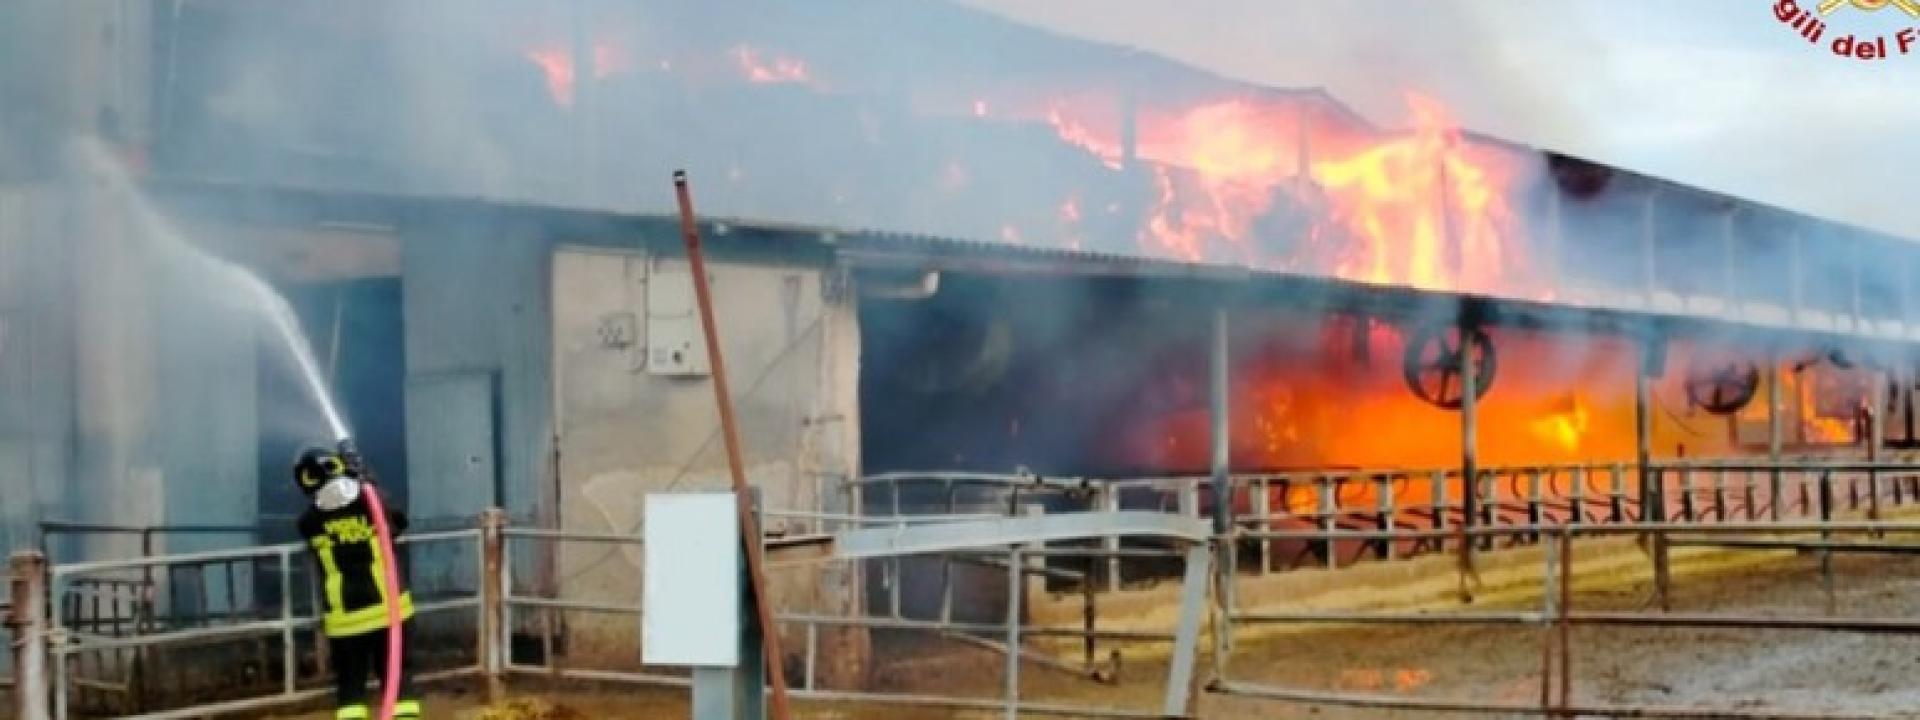 Marche - Violento incendio devasta un'azienda agricola: salvo il bestiame